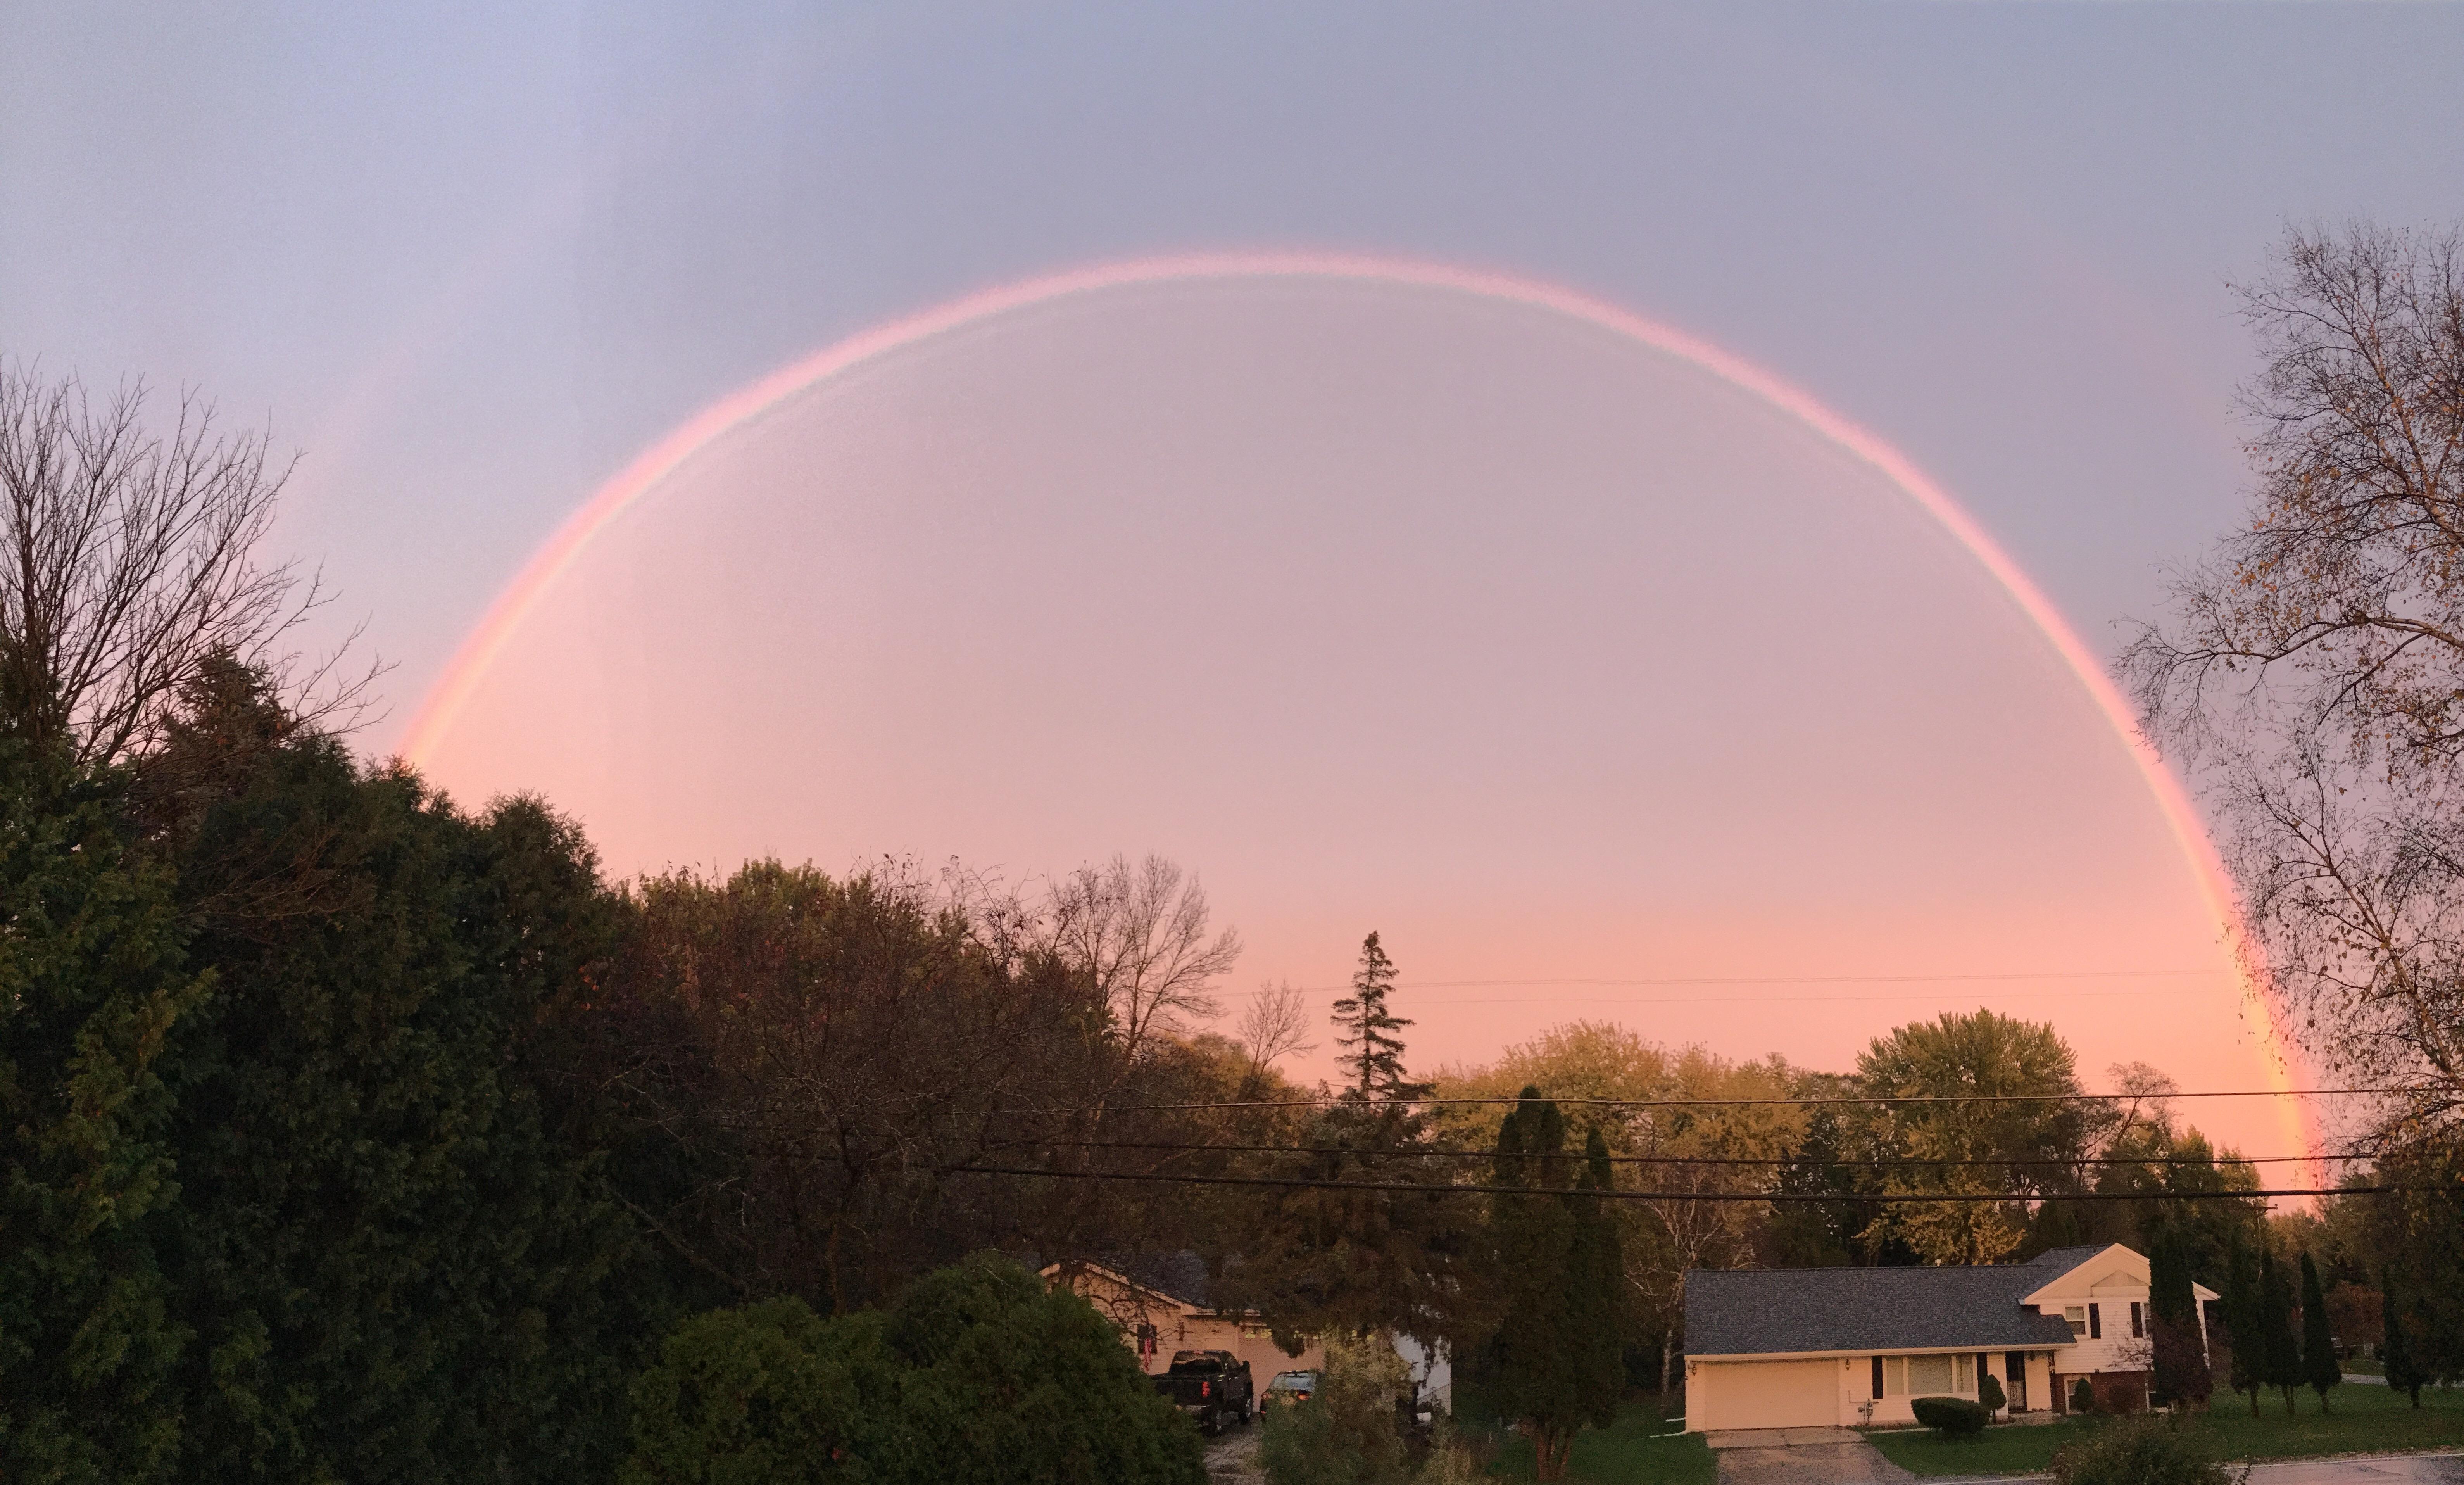 Amazing rainbow this evening! : madisonwi